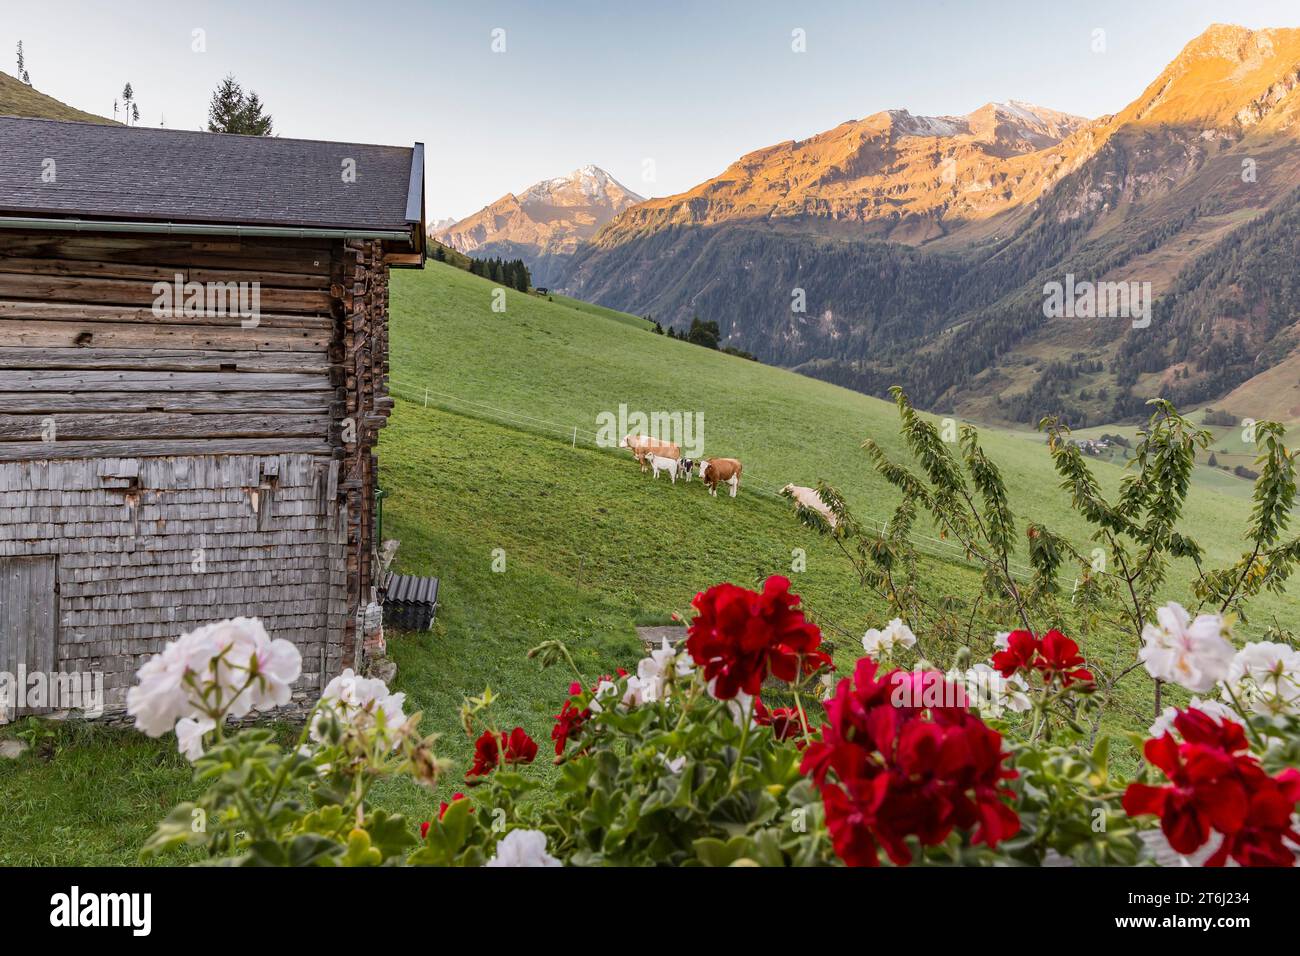 Vaches sur les pâturages alpins, lever du soleil, Fröstlberg dans la vallée du Rauris avec vue sur les montagnes, Schafkarkopf, 2727 m, Edlenkopf, 2924 m, Ritterkopf, 3006 m, Rauris, Pinzgau, Autriche Banque D'Images